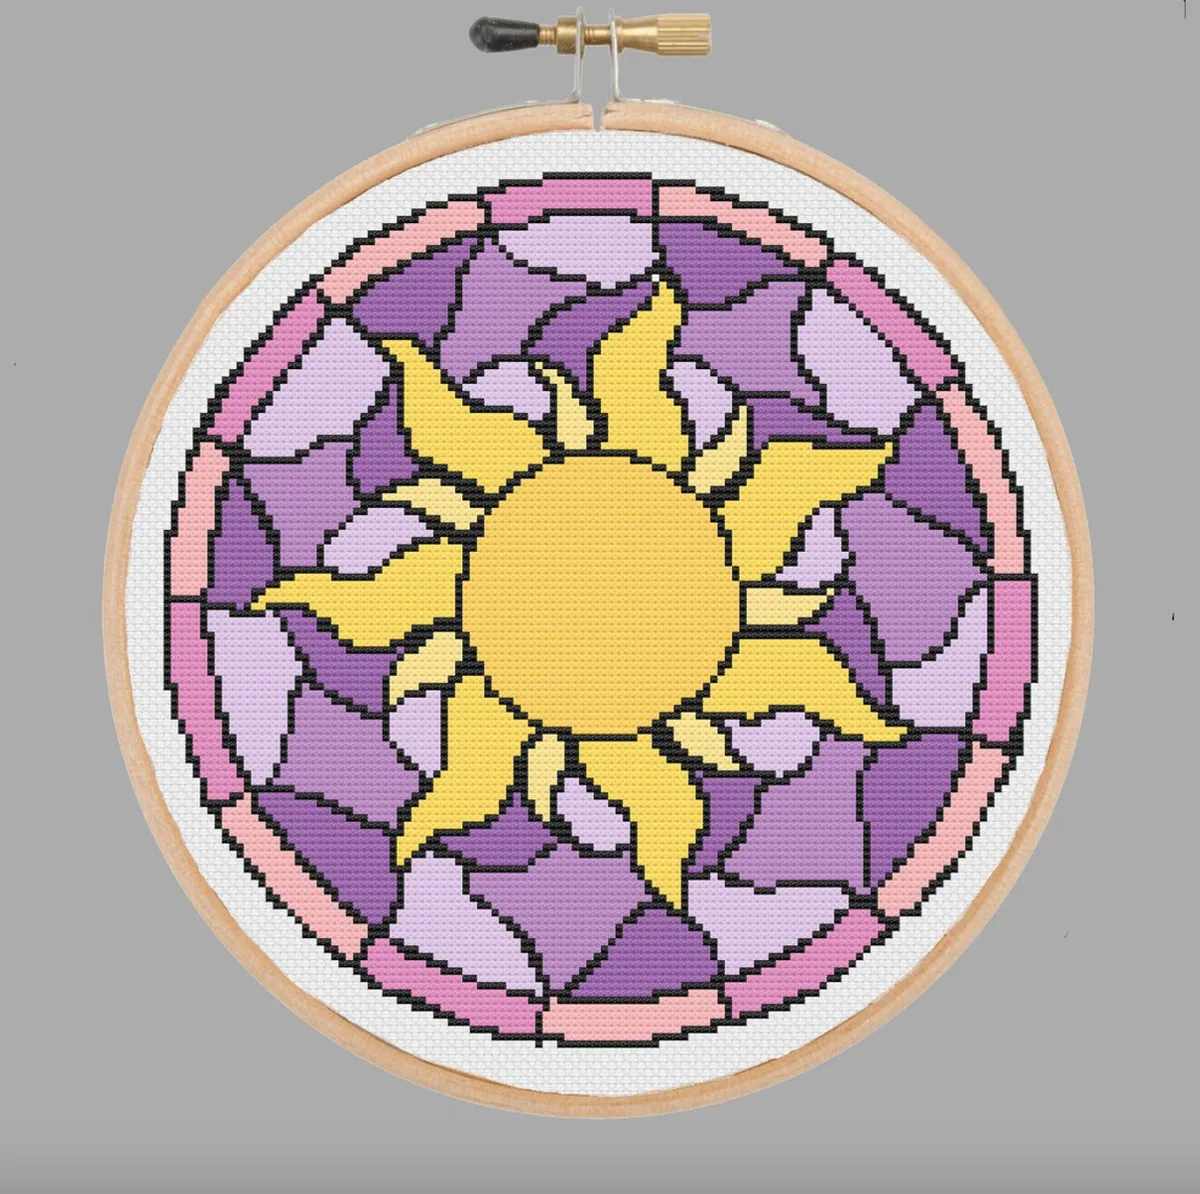 Stitching in the Round Cross Stitch Pattern | JBW Designs